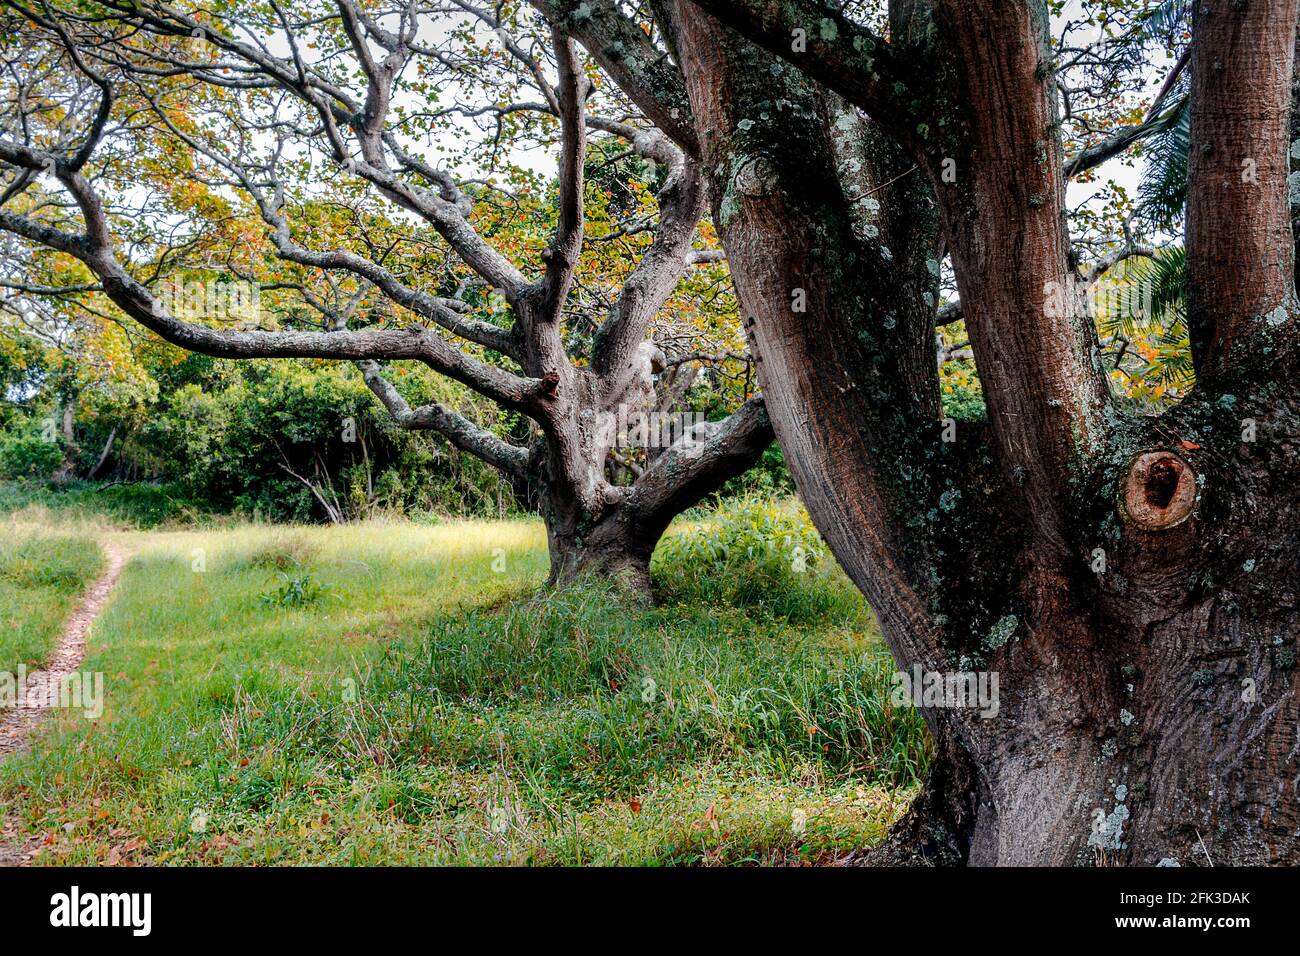 Die Bäume im Park mit dem Weg - der alte majestätische Baum Mit knarrigen Ästen im grünen Feld - schöner Baumhintergrund Stockfoto